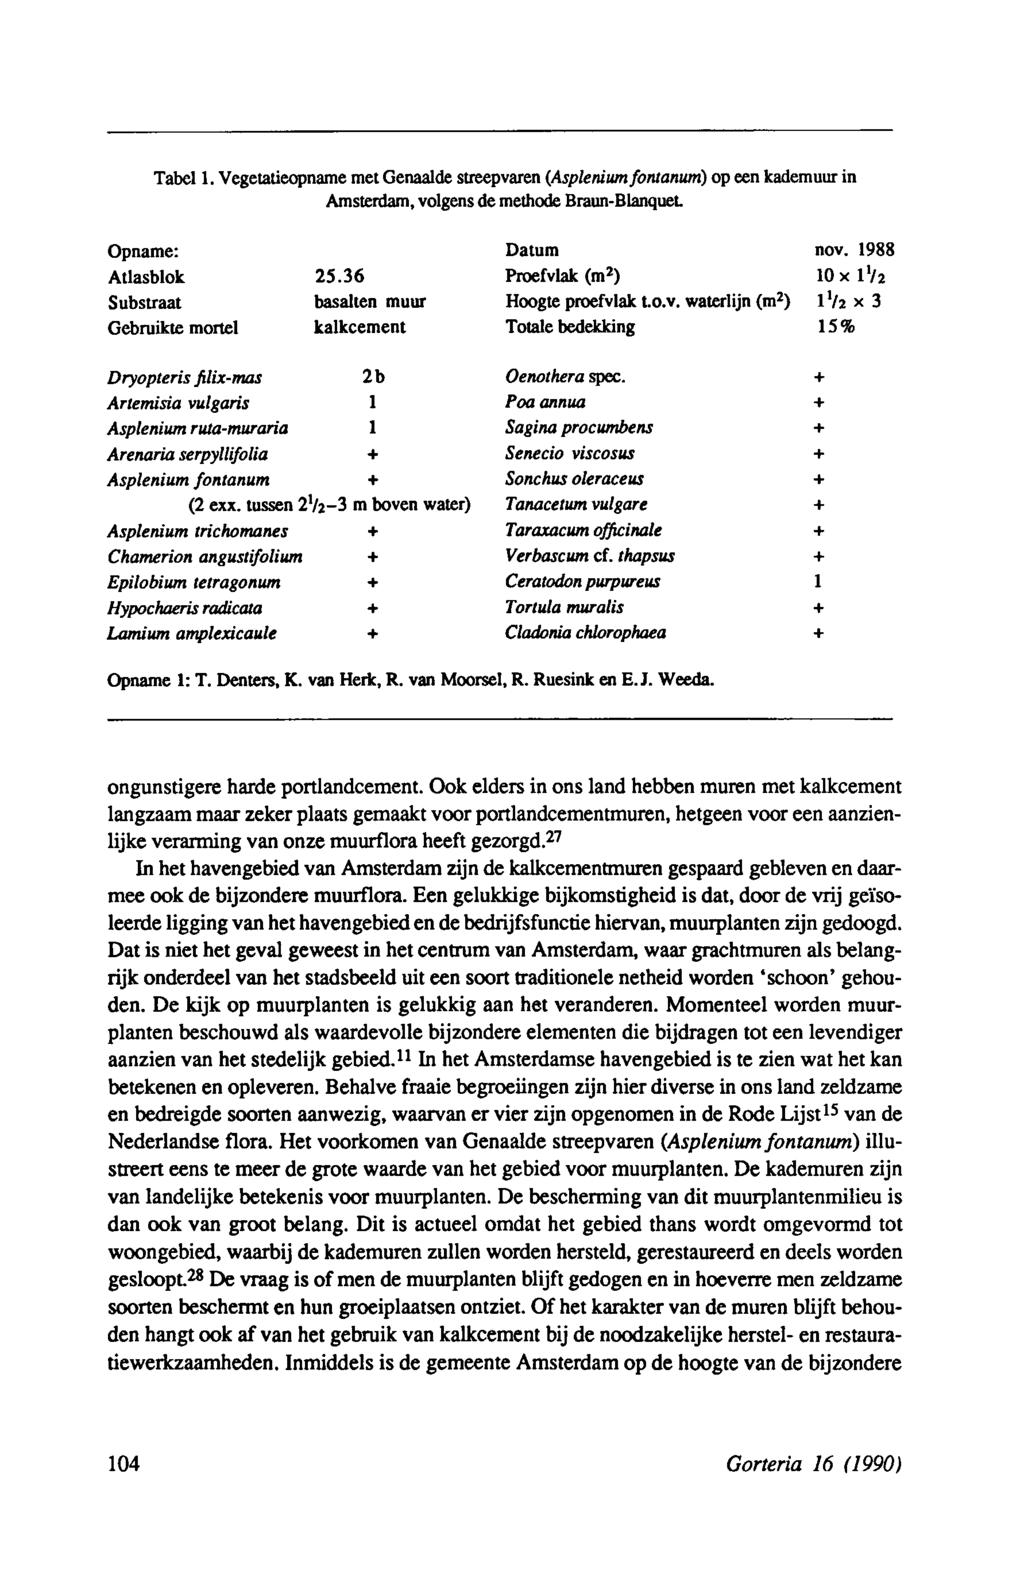 Tabel. VegetatieopnamemetGenaaide streepvaren (Aspleniumfontanum) op eenkademuur in Amsterdam, volgens de methode BraunBlanquet. Opname: Datum nov. 988 Atlasblok 25.